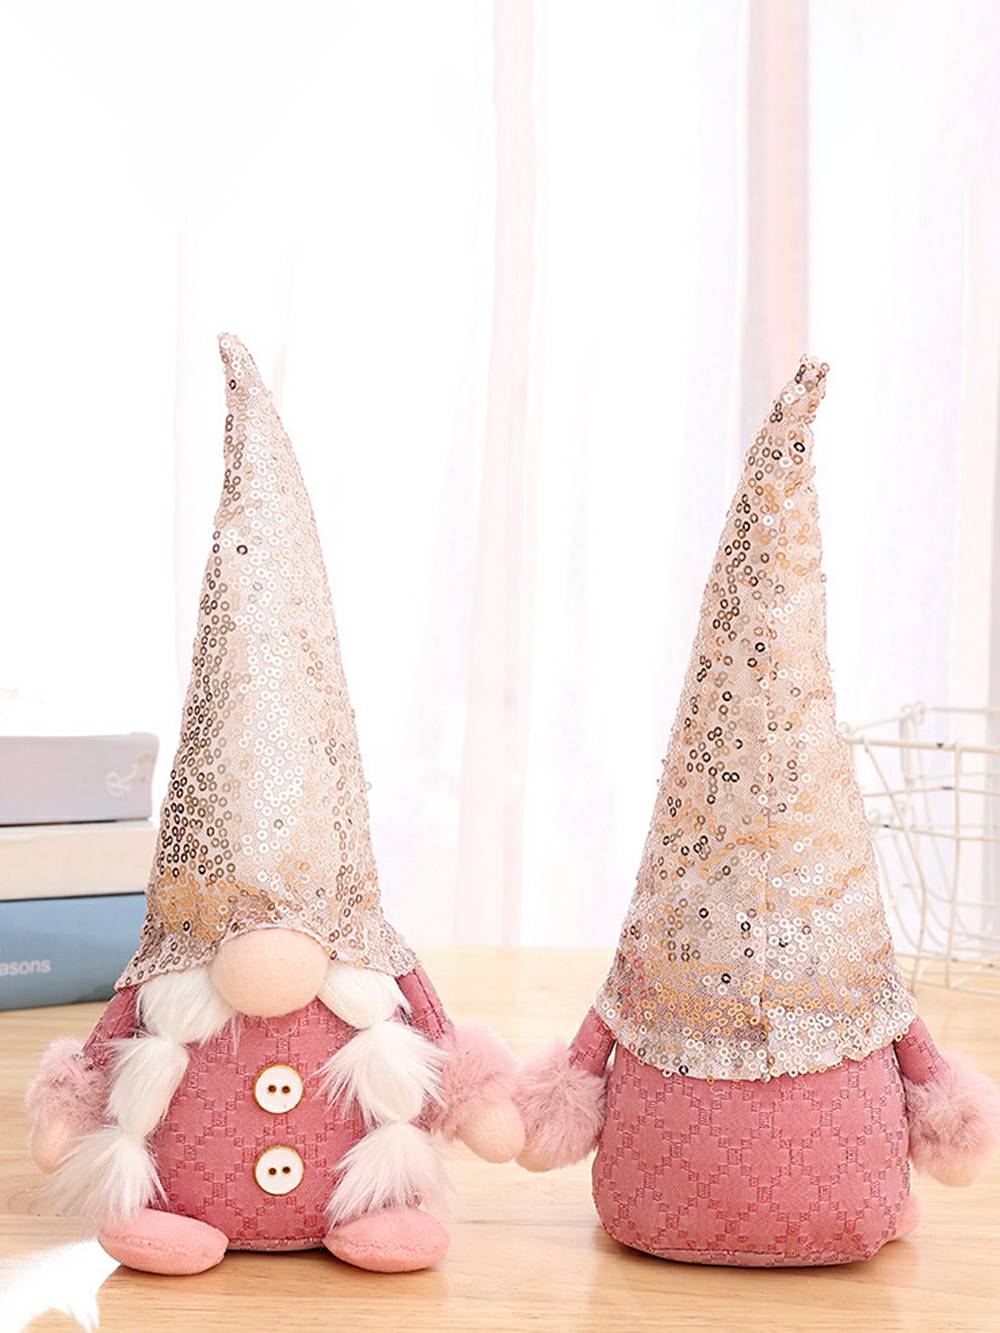 Chrëschtdag Plüsch Elf: Pink Beaded Rudolph Gnome Doll